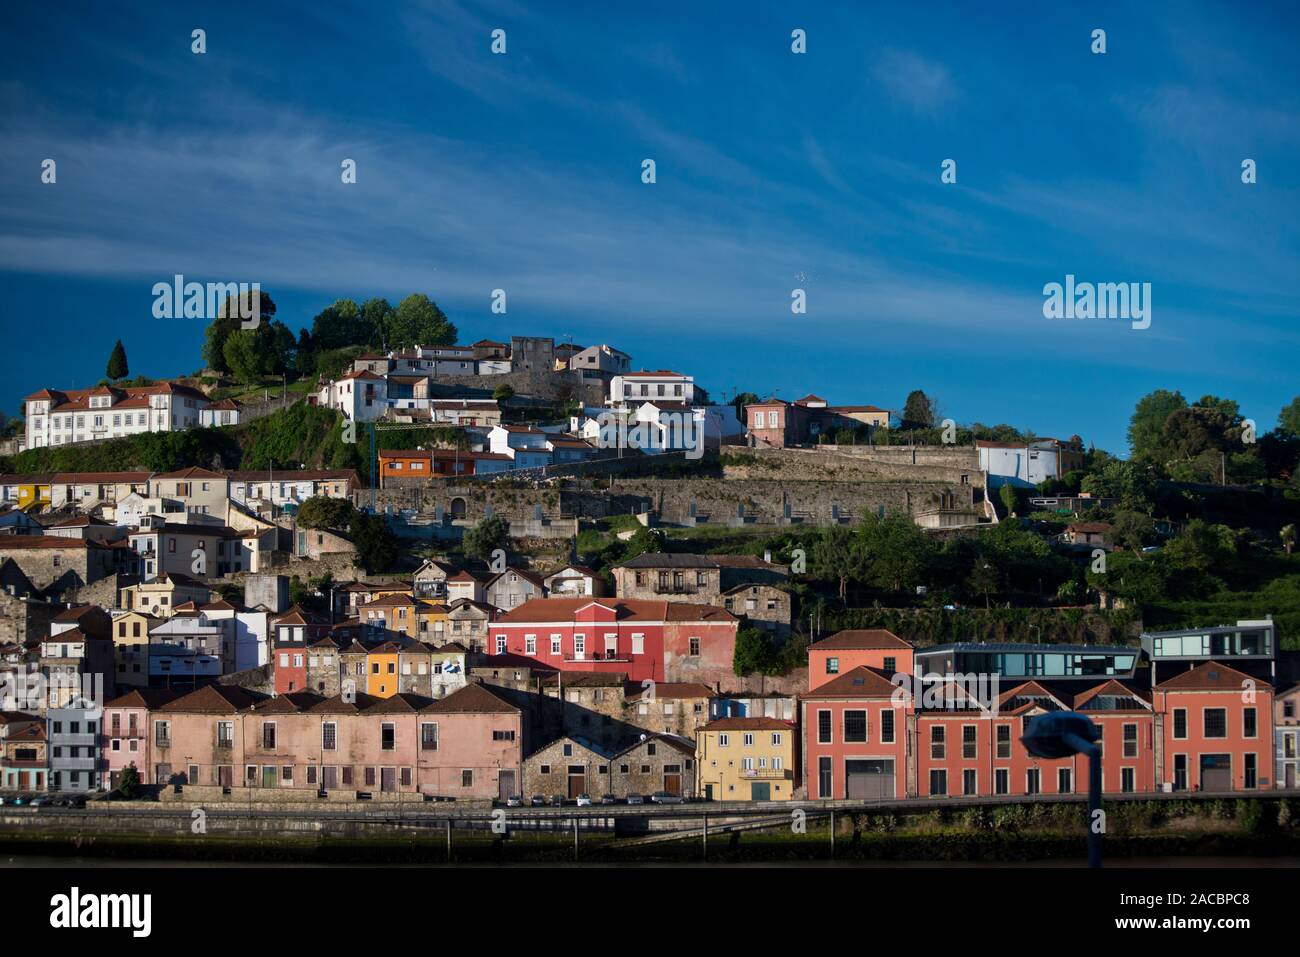 Vila Nova de Gaia in the morning taken from across the Douro river Stock Photo